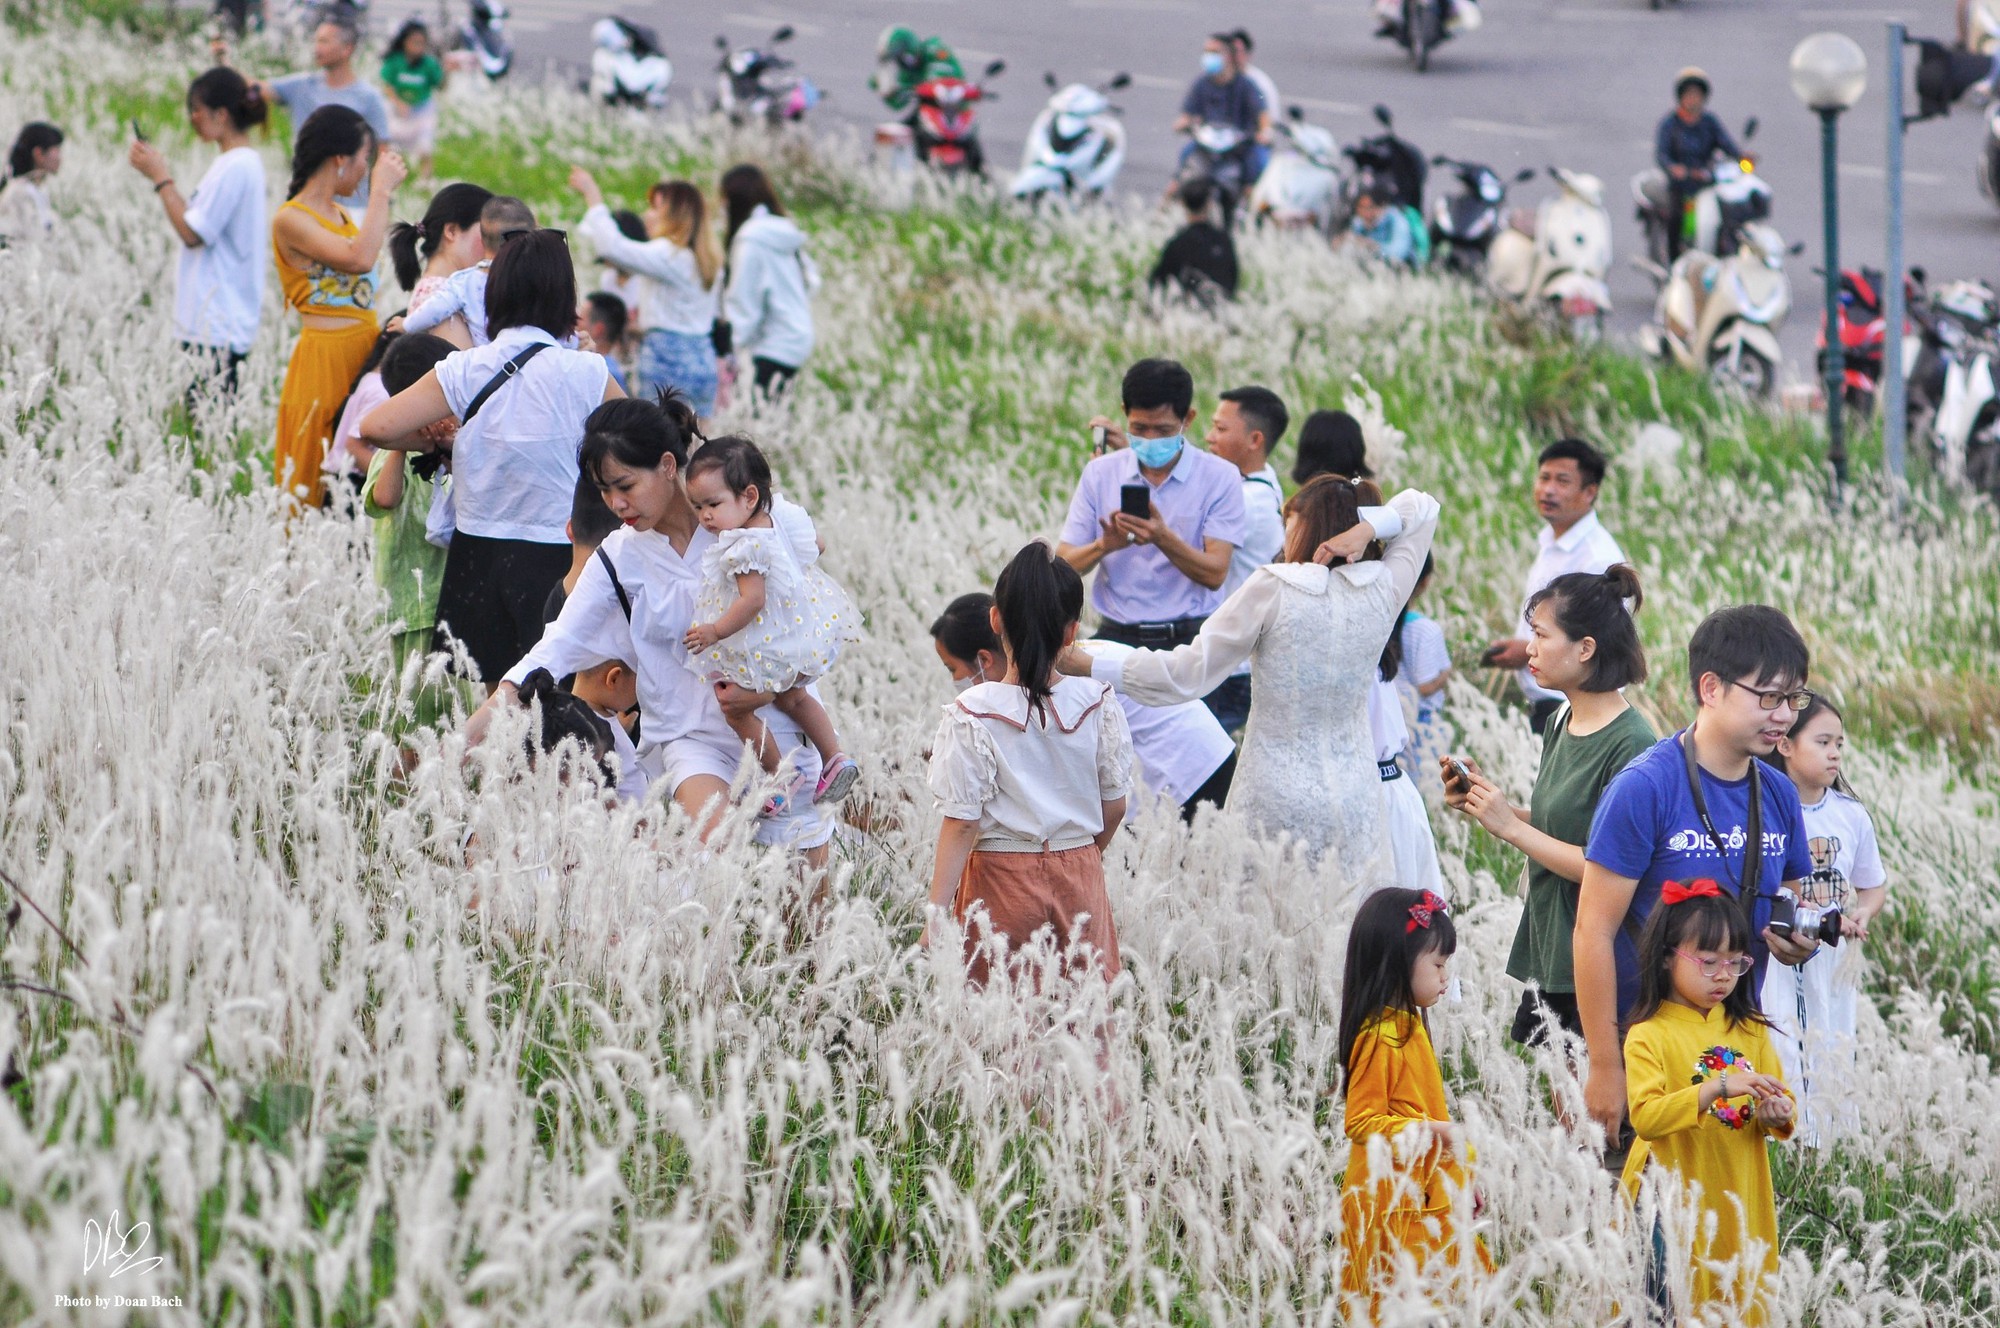 Ra đê Long Biên chụp ảnh giữa trắng ngàn cỏ lau - Ảnh 1.